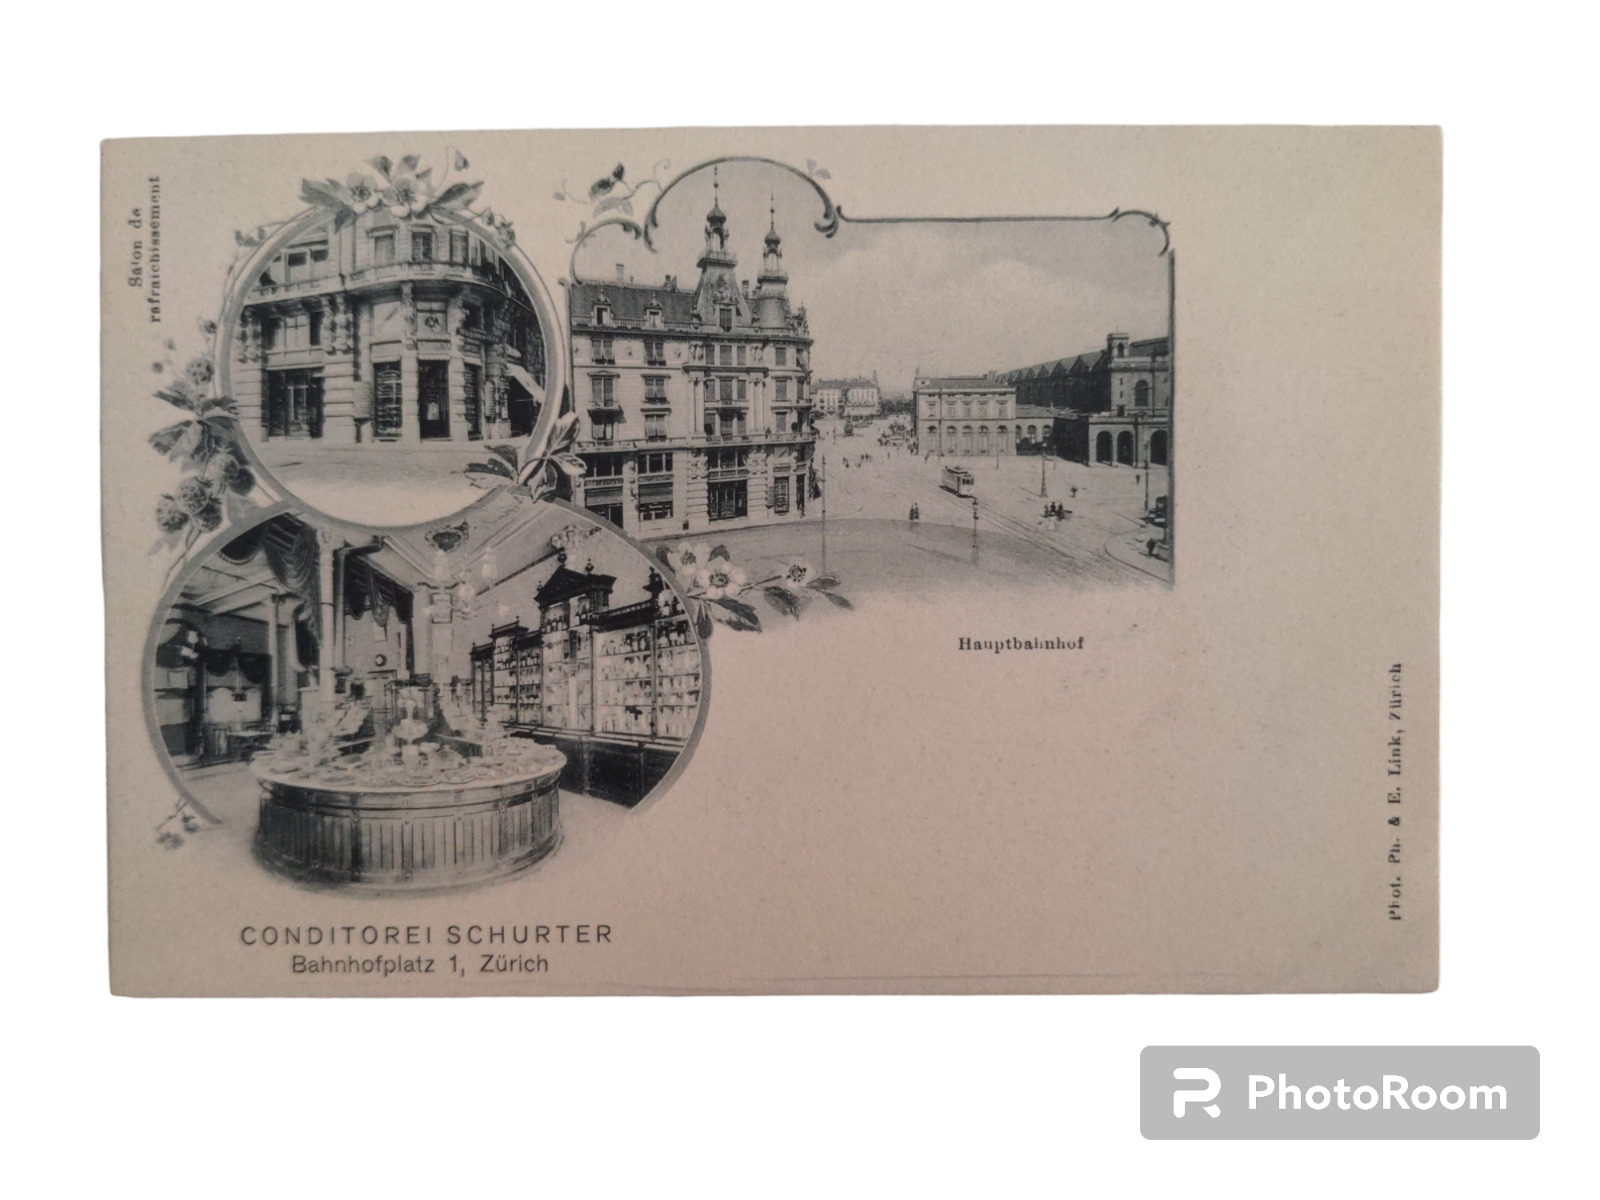 Antique Postcard Conditorei Schurter Bakery Zurich Switzerland Scenes